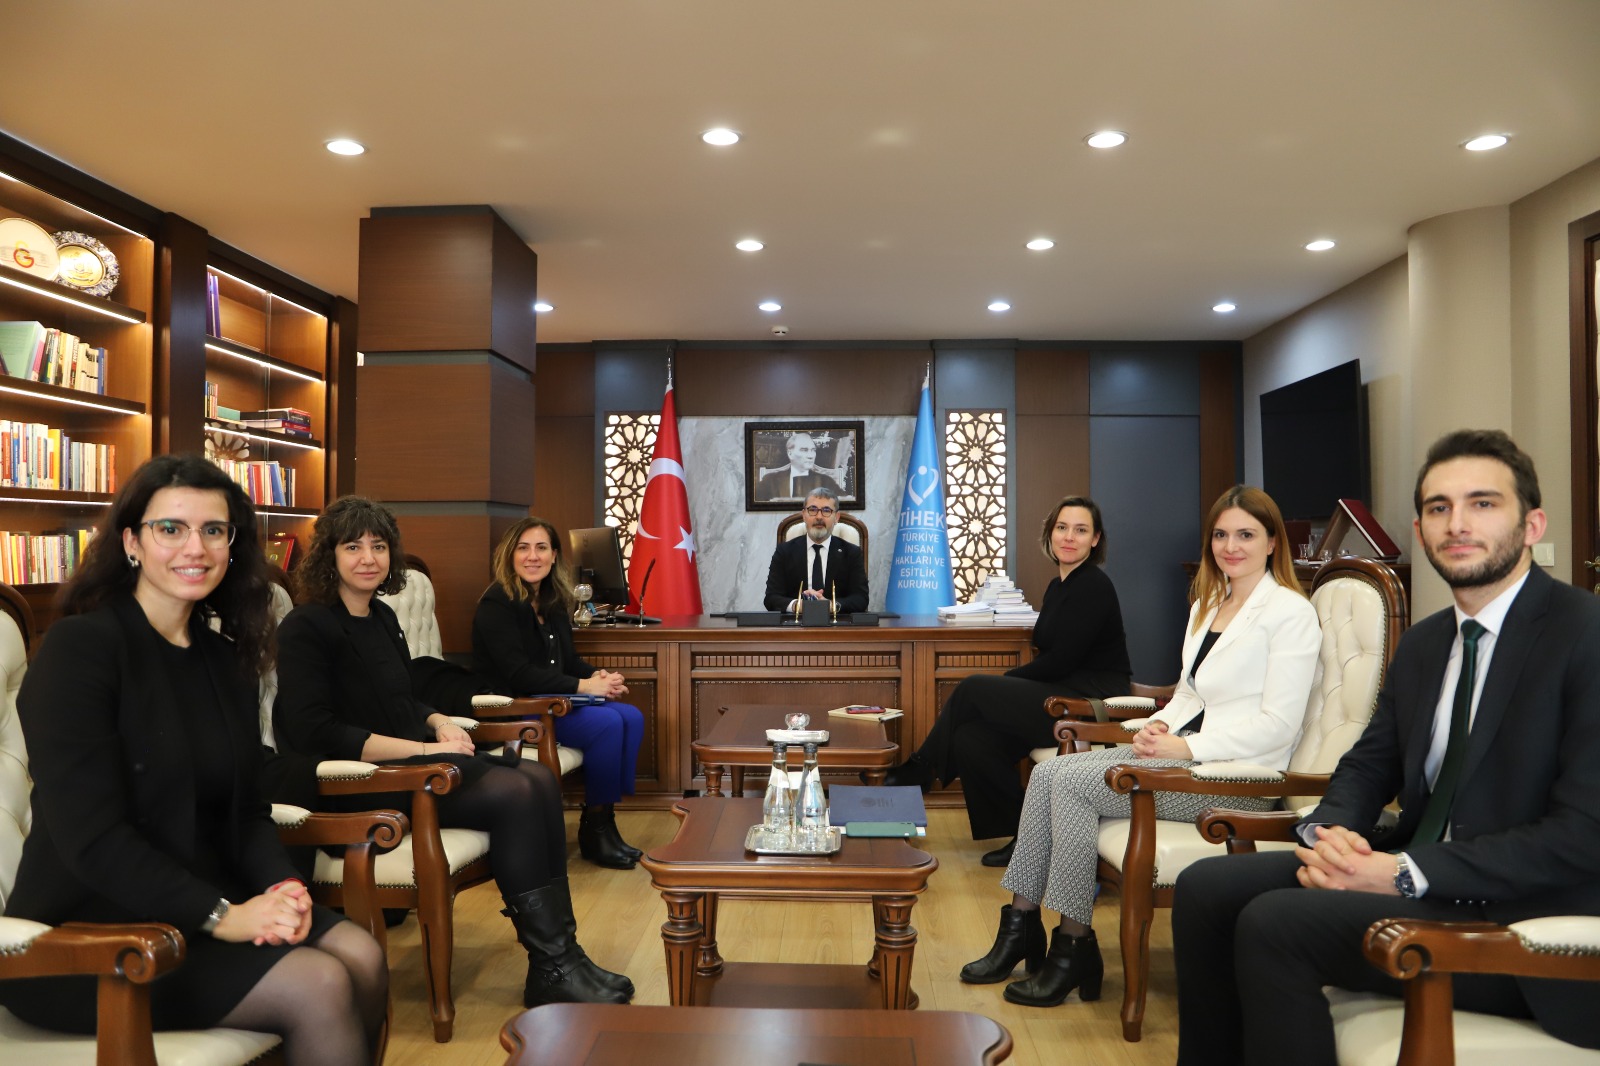 Avrupa Konseyi Türkiye Ofisi Temsilcilerinden Kurumumuza Ziyaret